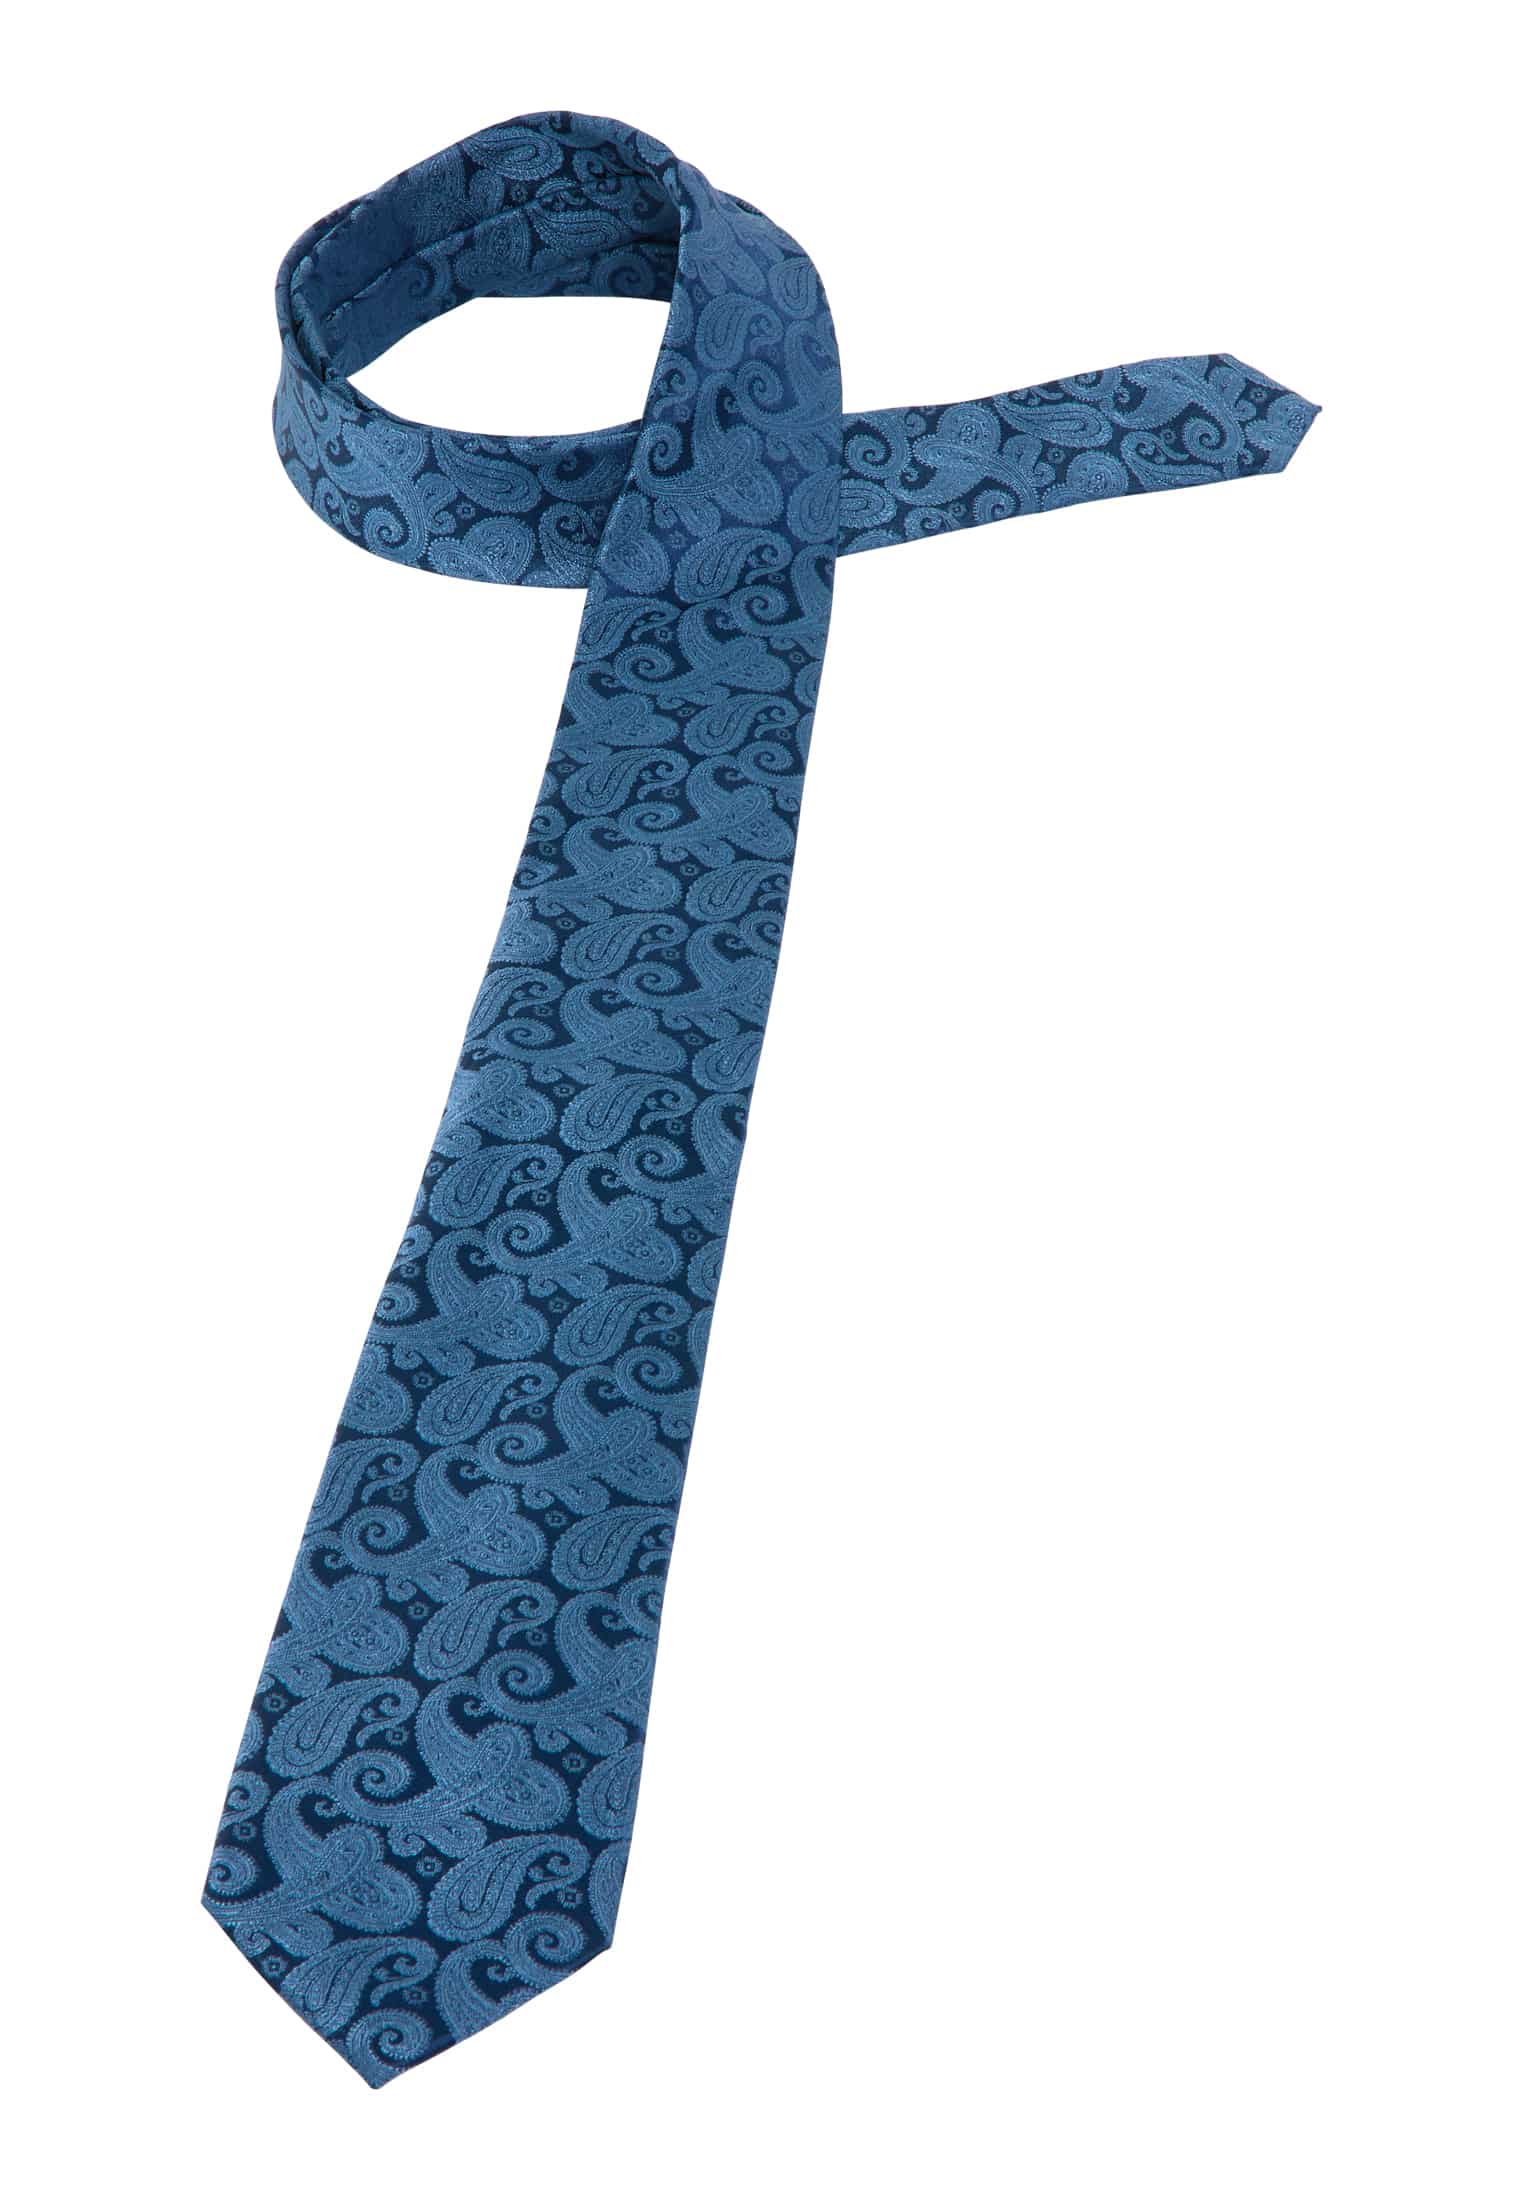 Krawatte in blau gemustert | 142 | blau 1AC01891-01-41-142 